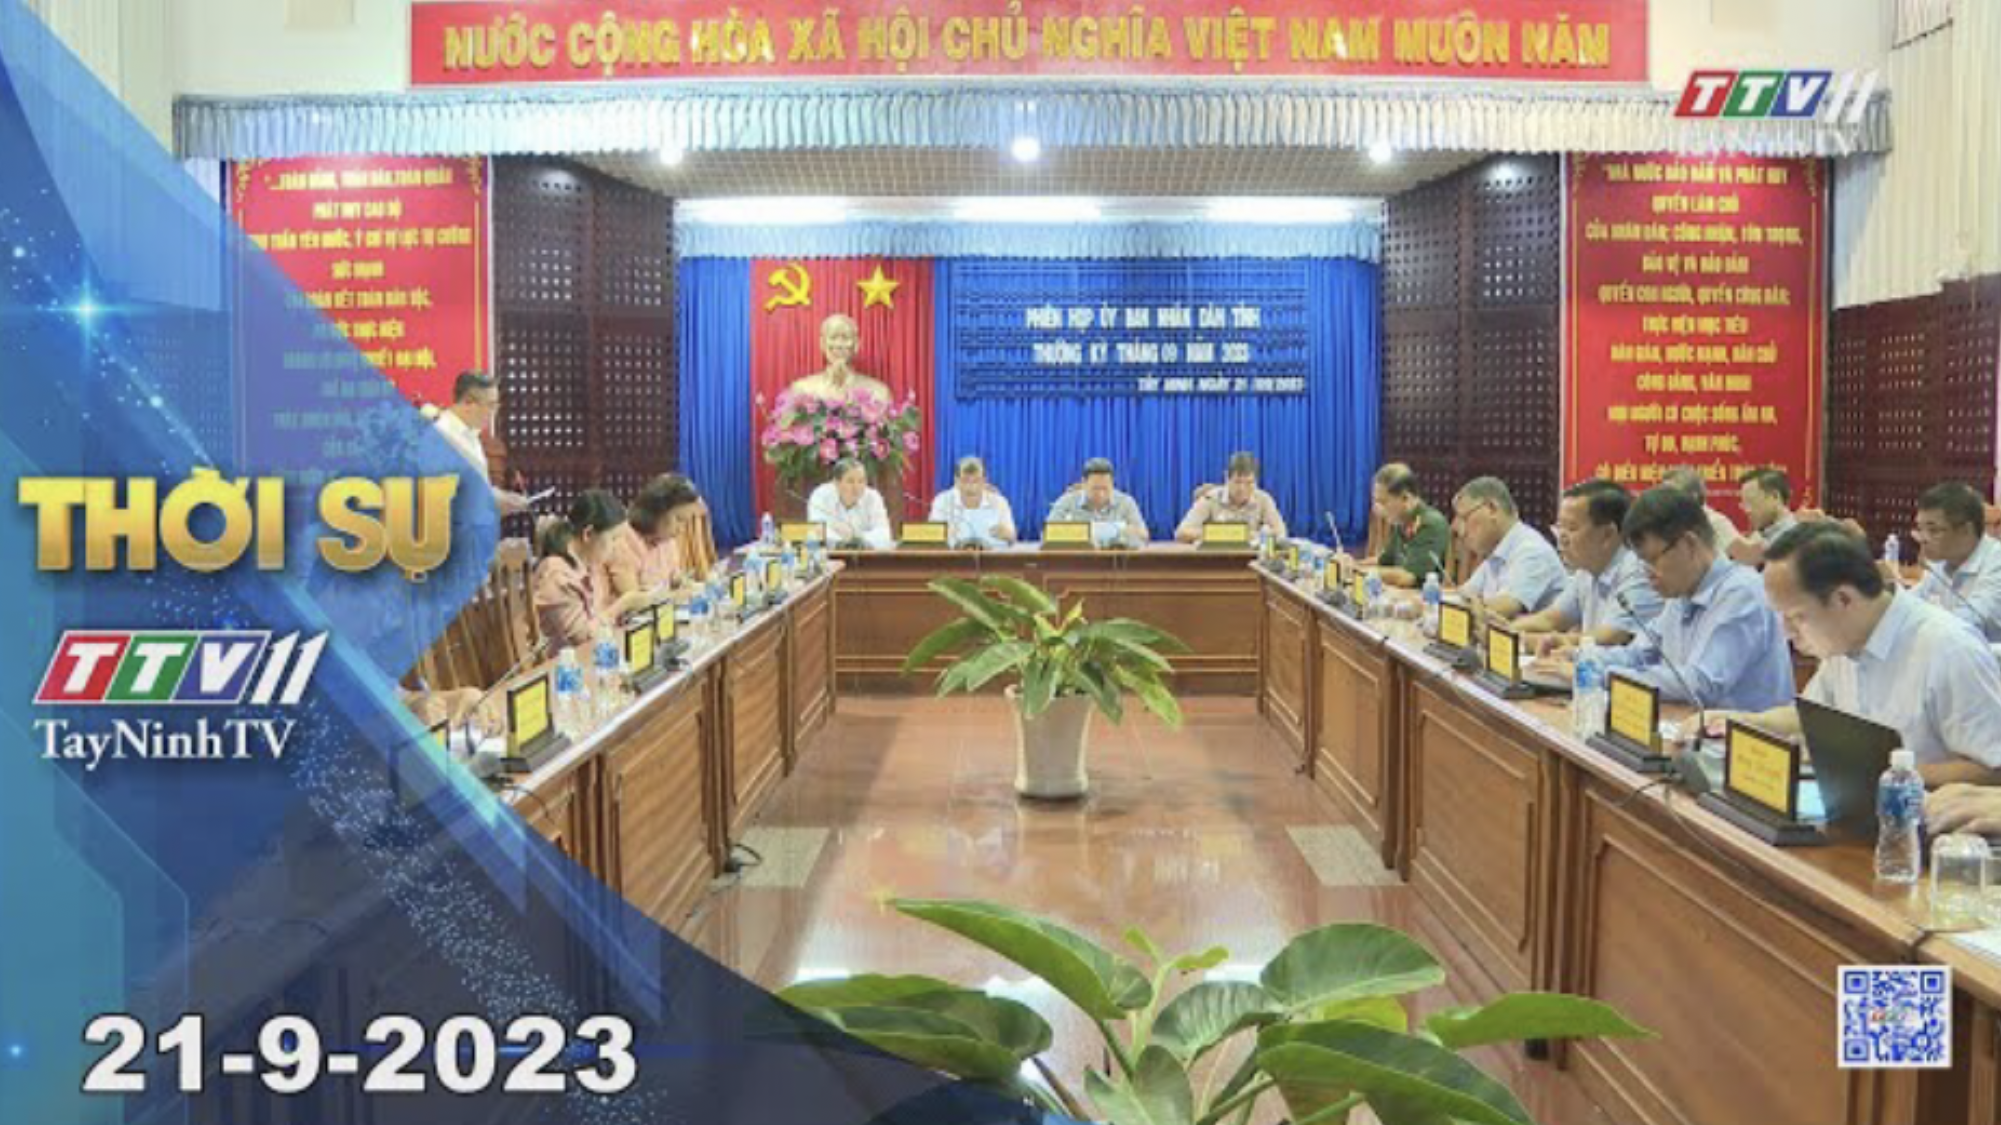 Thời sự Tây Ninh 21-9-2023 | Tin tức hôm nay | TayNinhTV